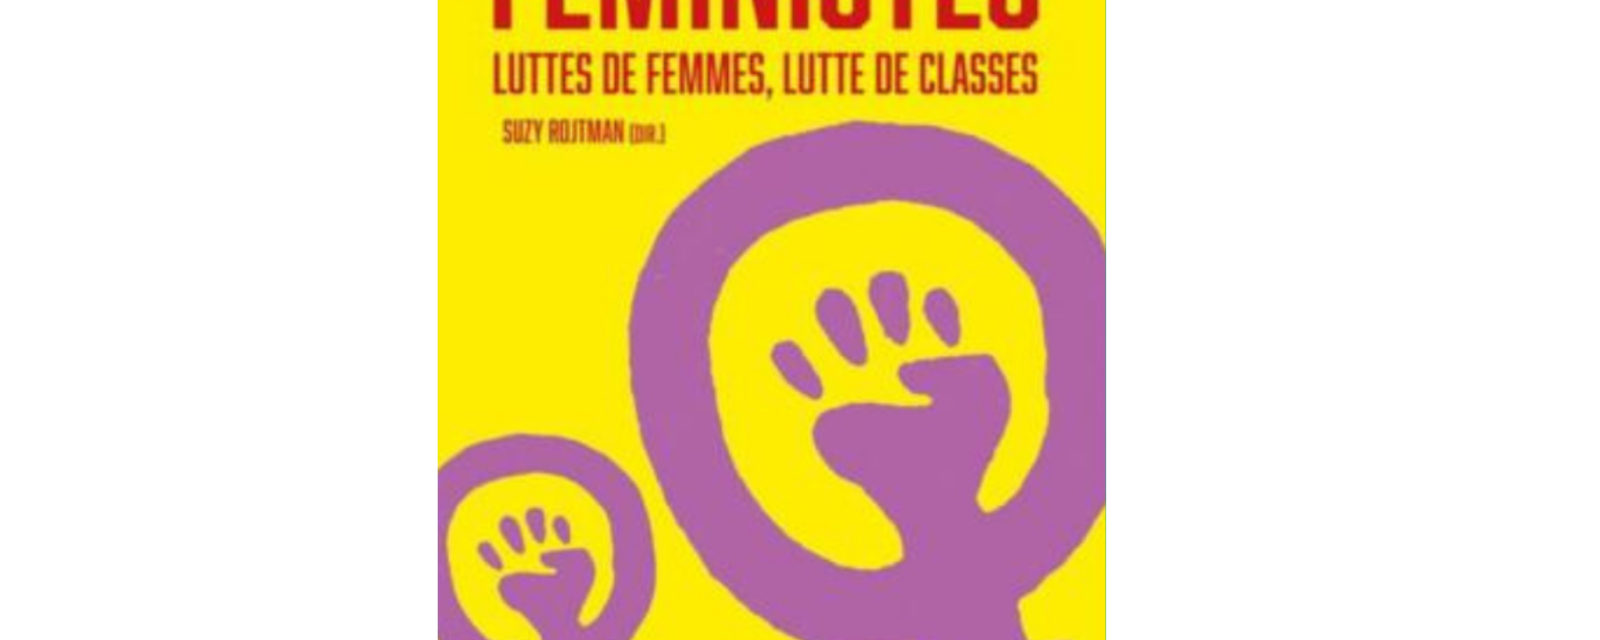 Conférence-Débat - Féministes : luttes de femmes, luttes de classes